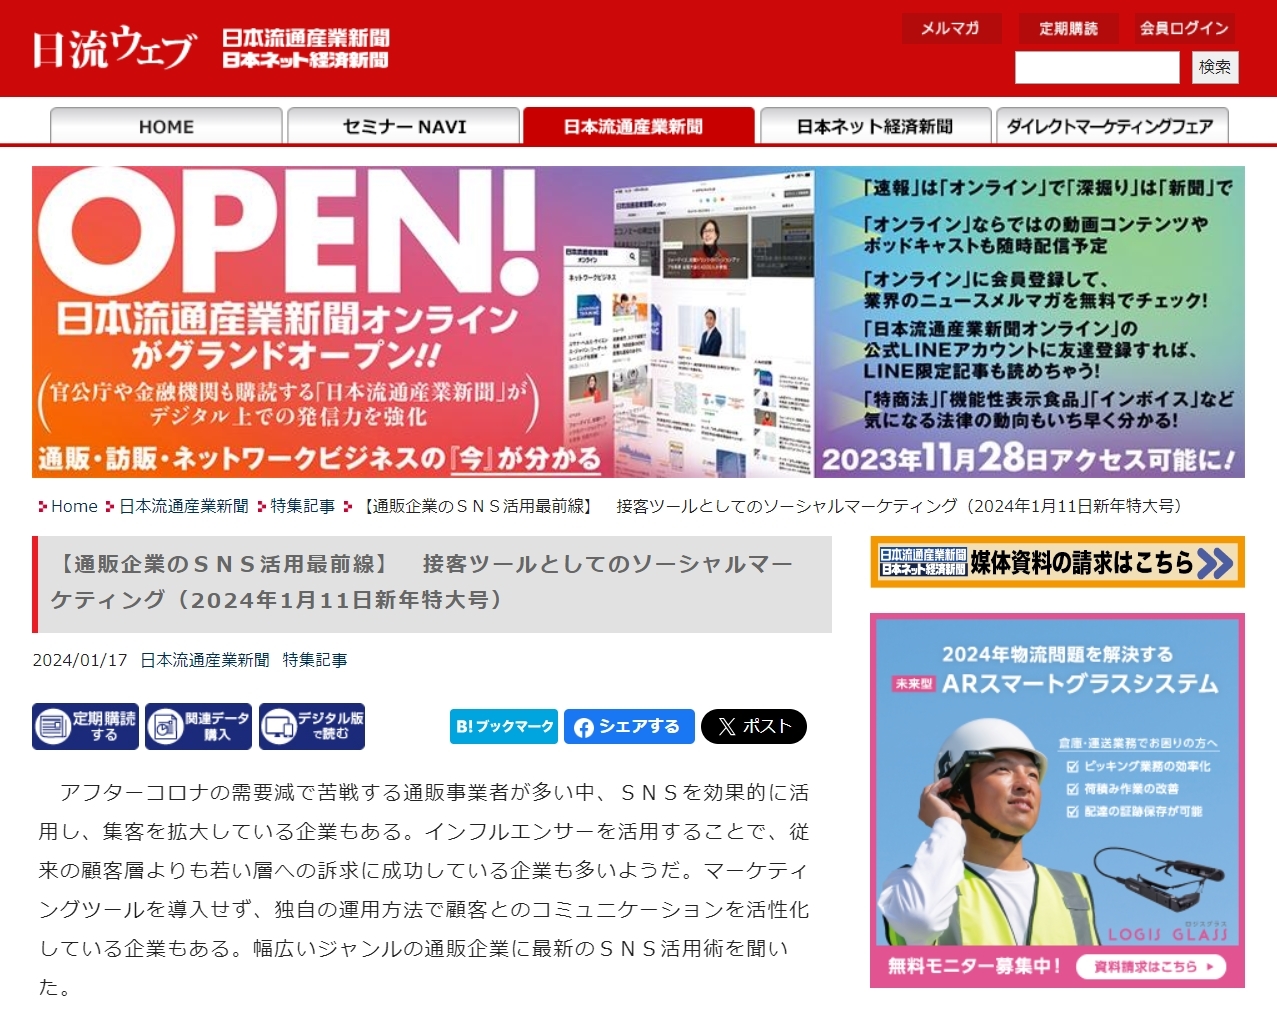 日本流通産業新聞1/11新年特大号に当社のデジタルマーケティング事業について掲載されました